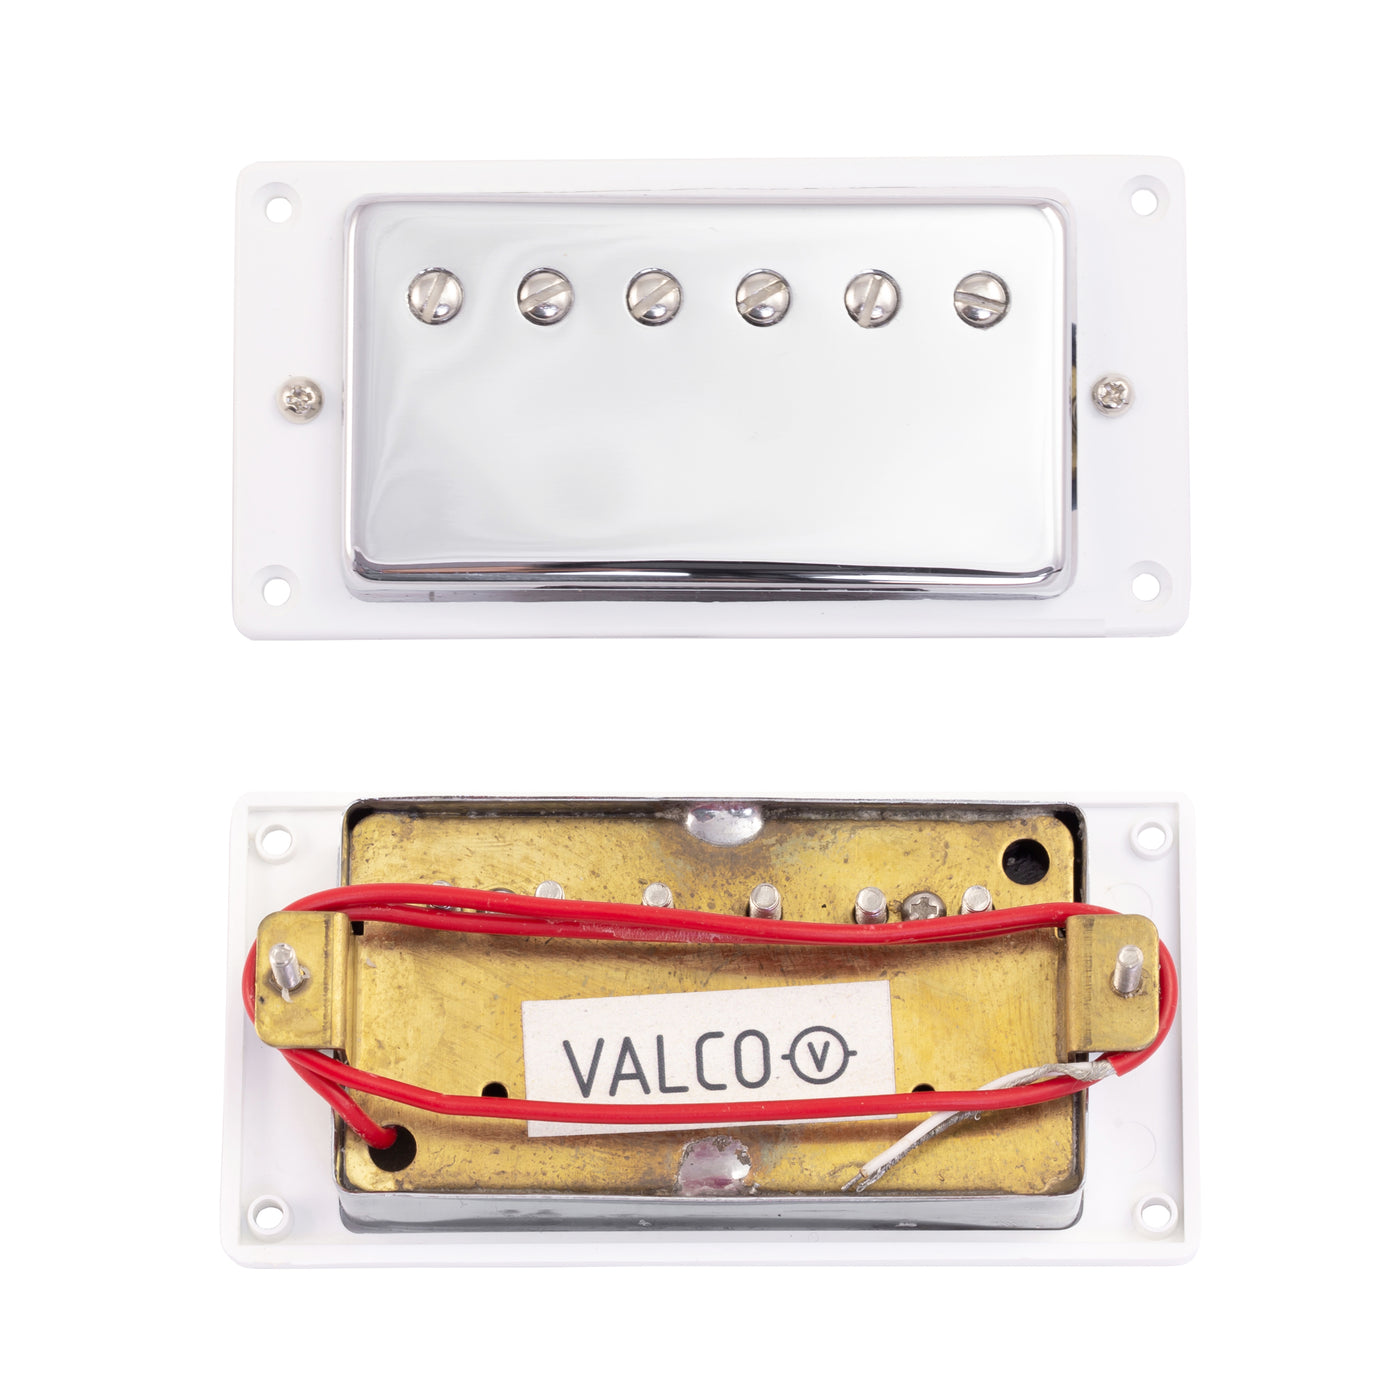 Valco 'Airline' VVSC Pickups Chrome Neck